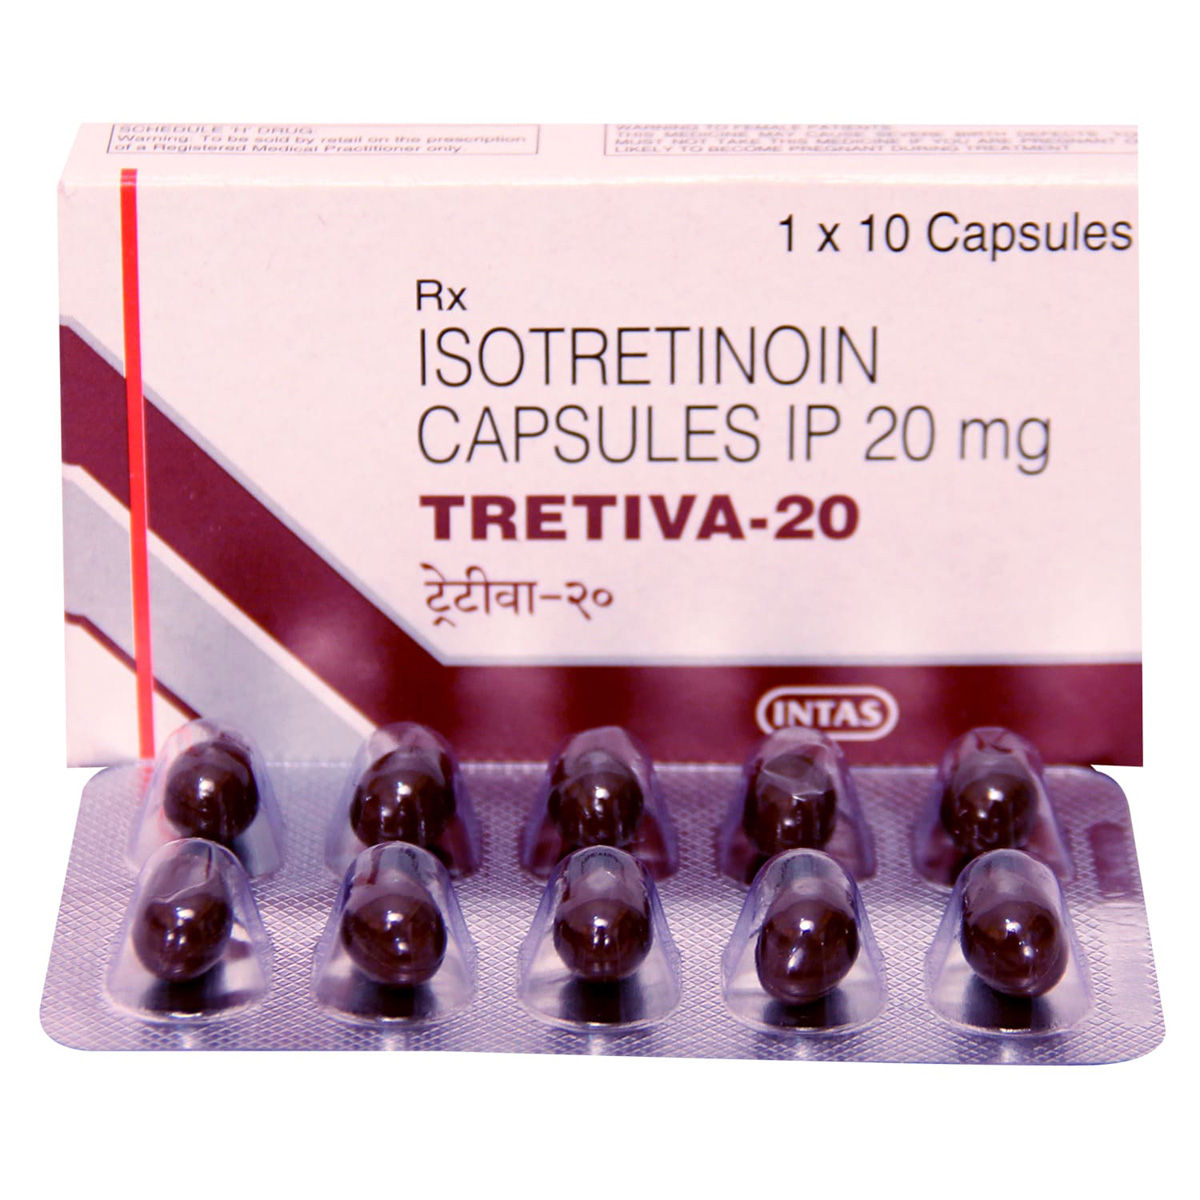 Tretiva-20 Capsule 10's, Pack of 10 CAPSULES